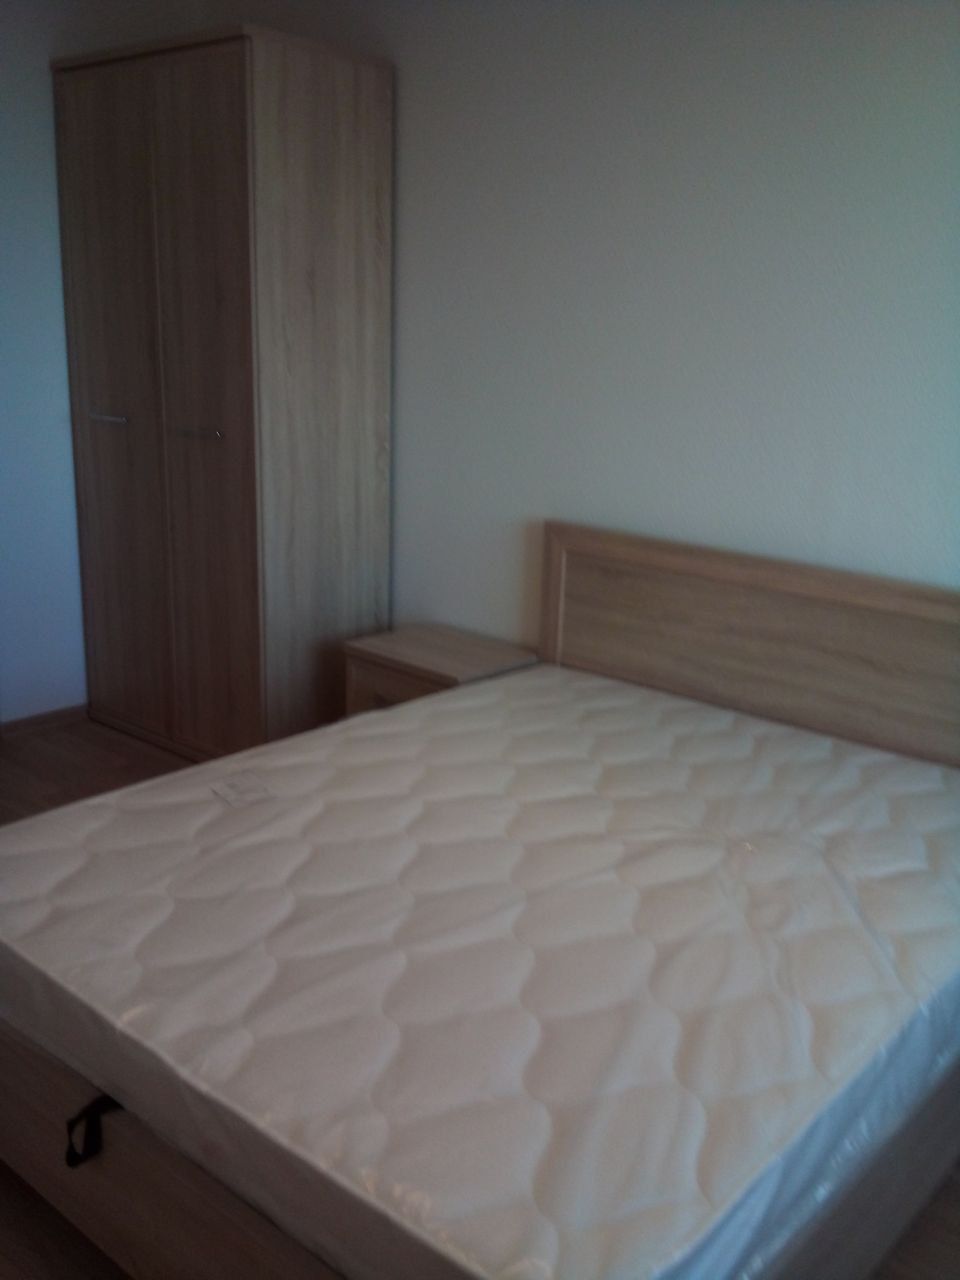 Двуспальная кровать "Мальта" 140 х 190 с подъемным механизмом цвет венге